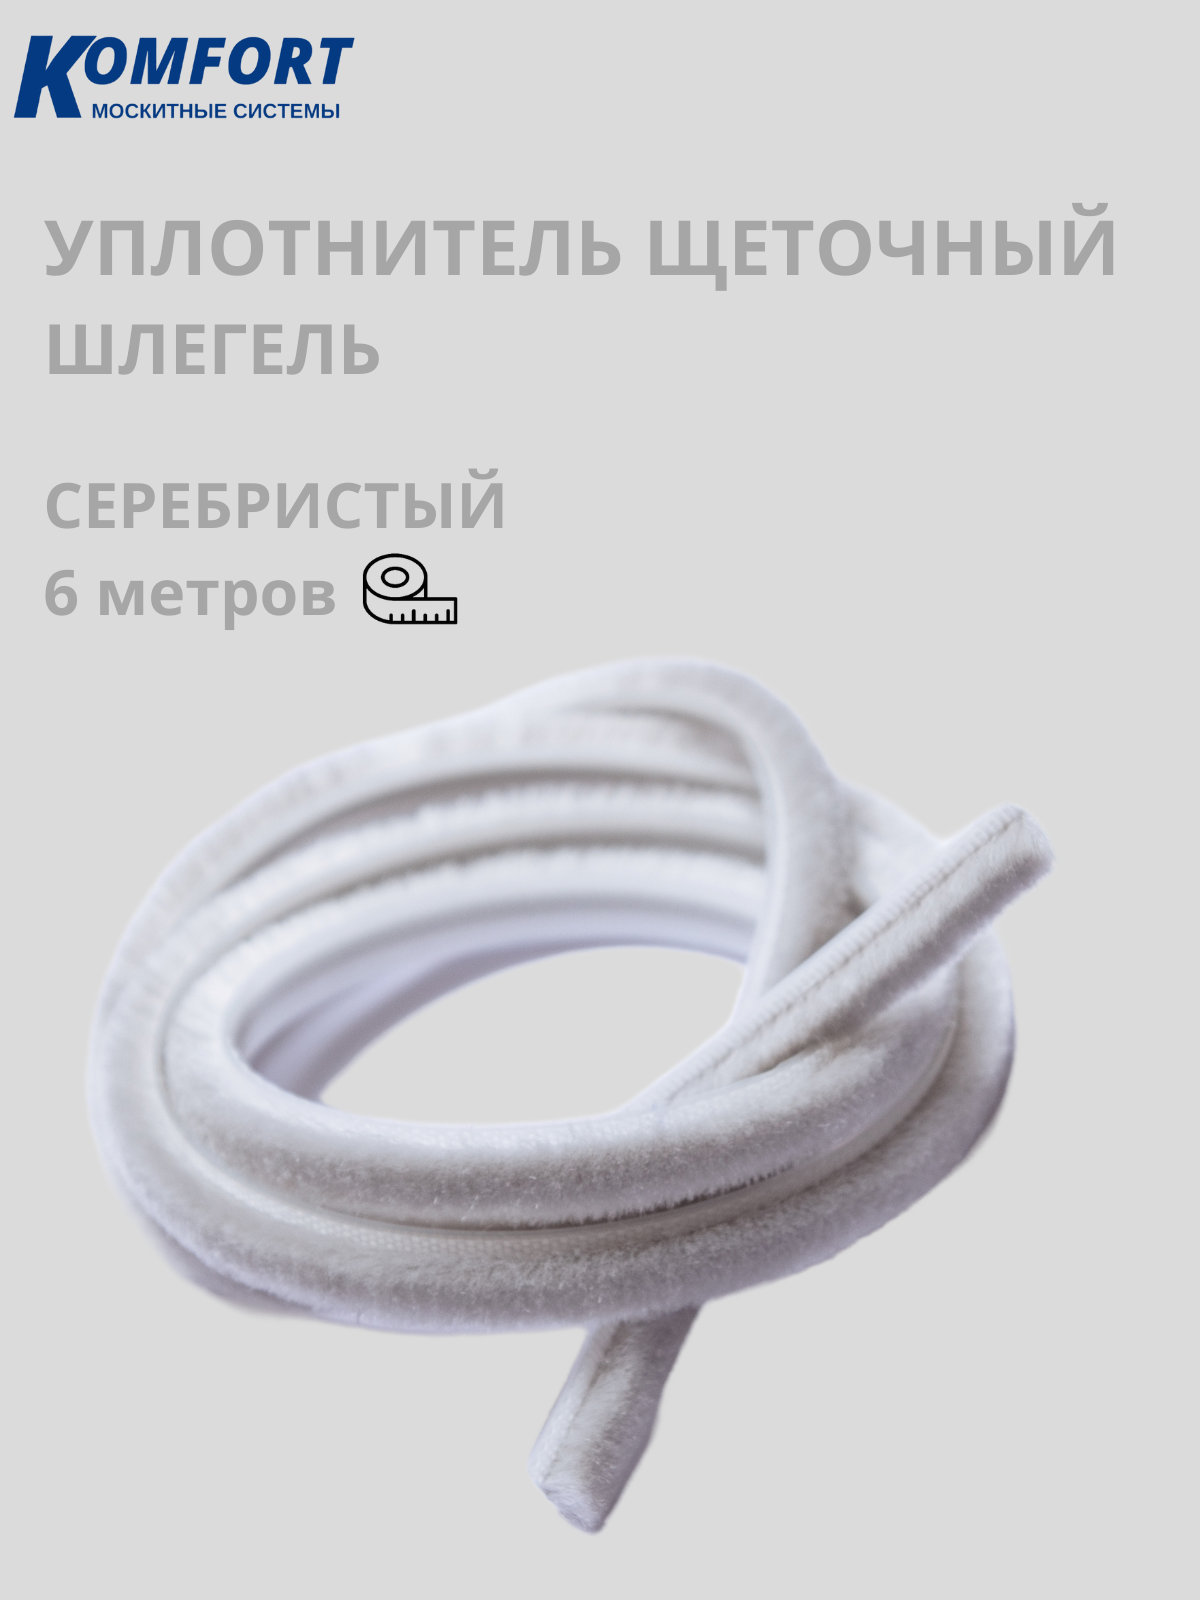 Фетр уплотнитель Komfort для москитных сеток щеточный самоклеящийся 7*6 мм серебро 6 м дразнилка из фетра